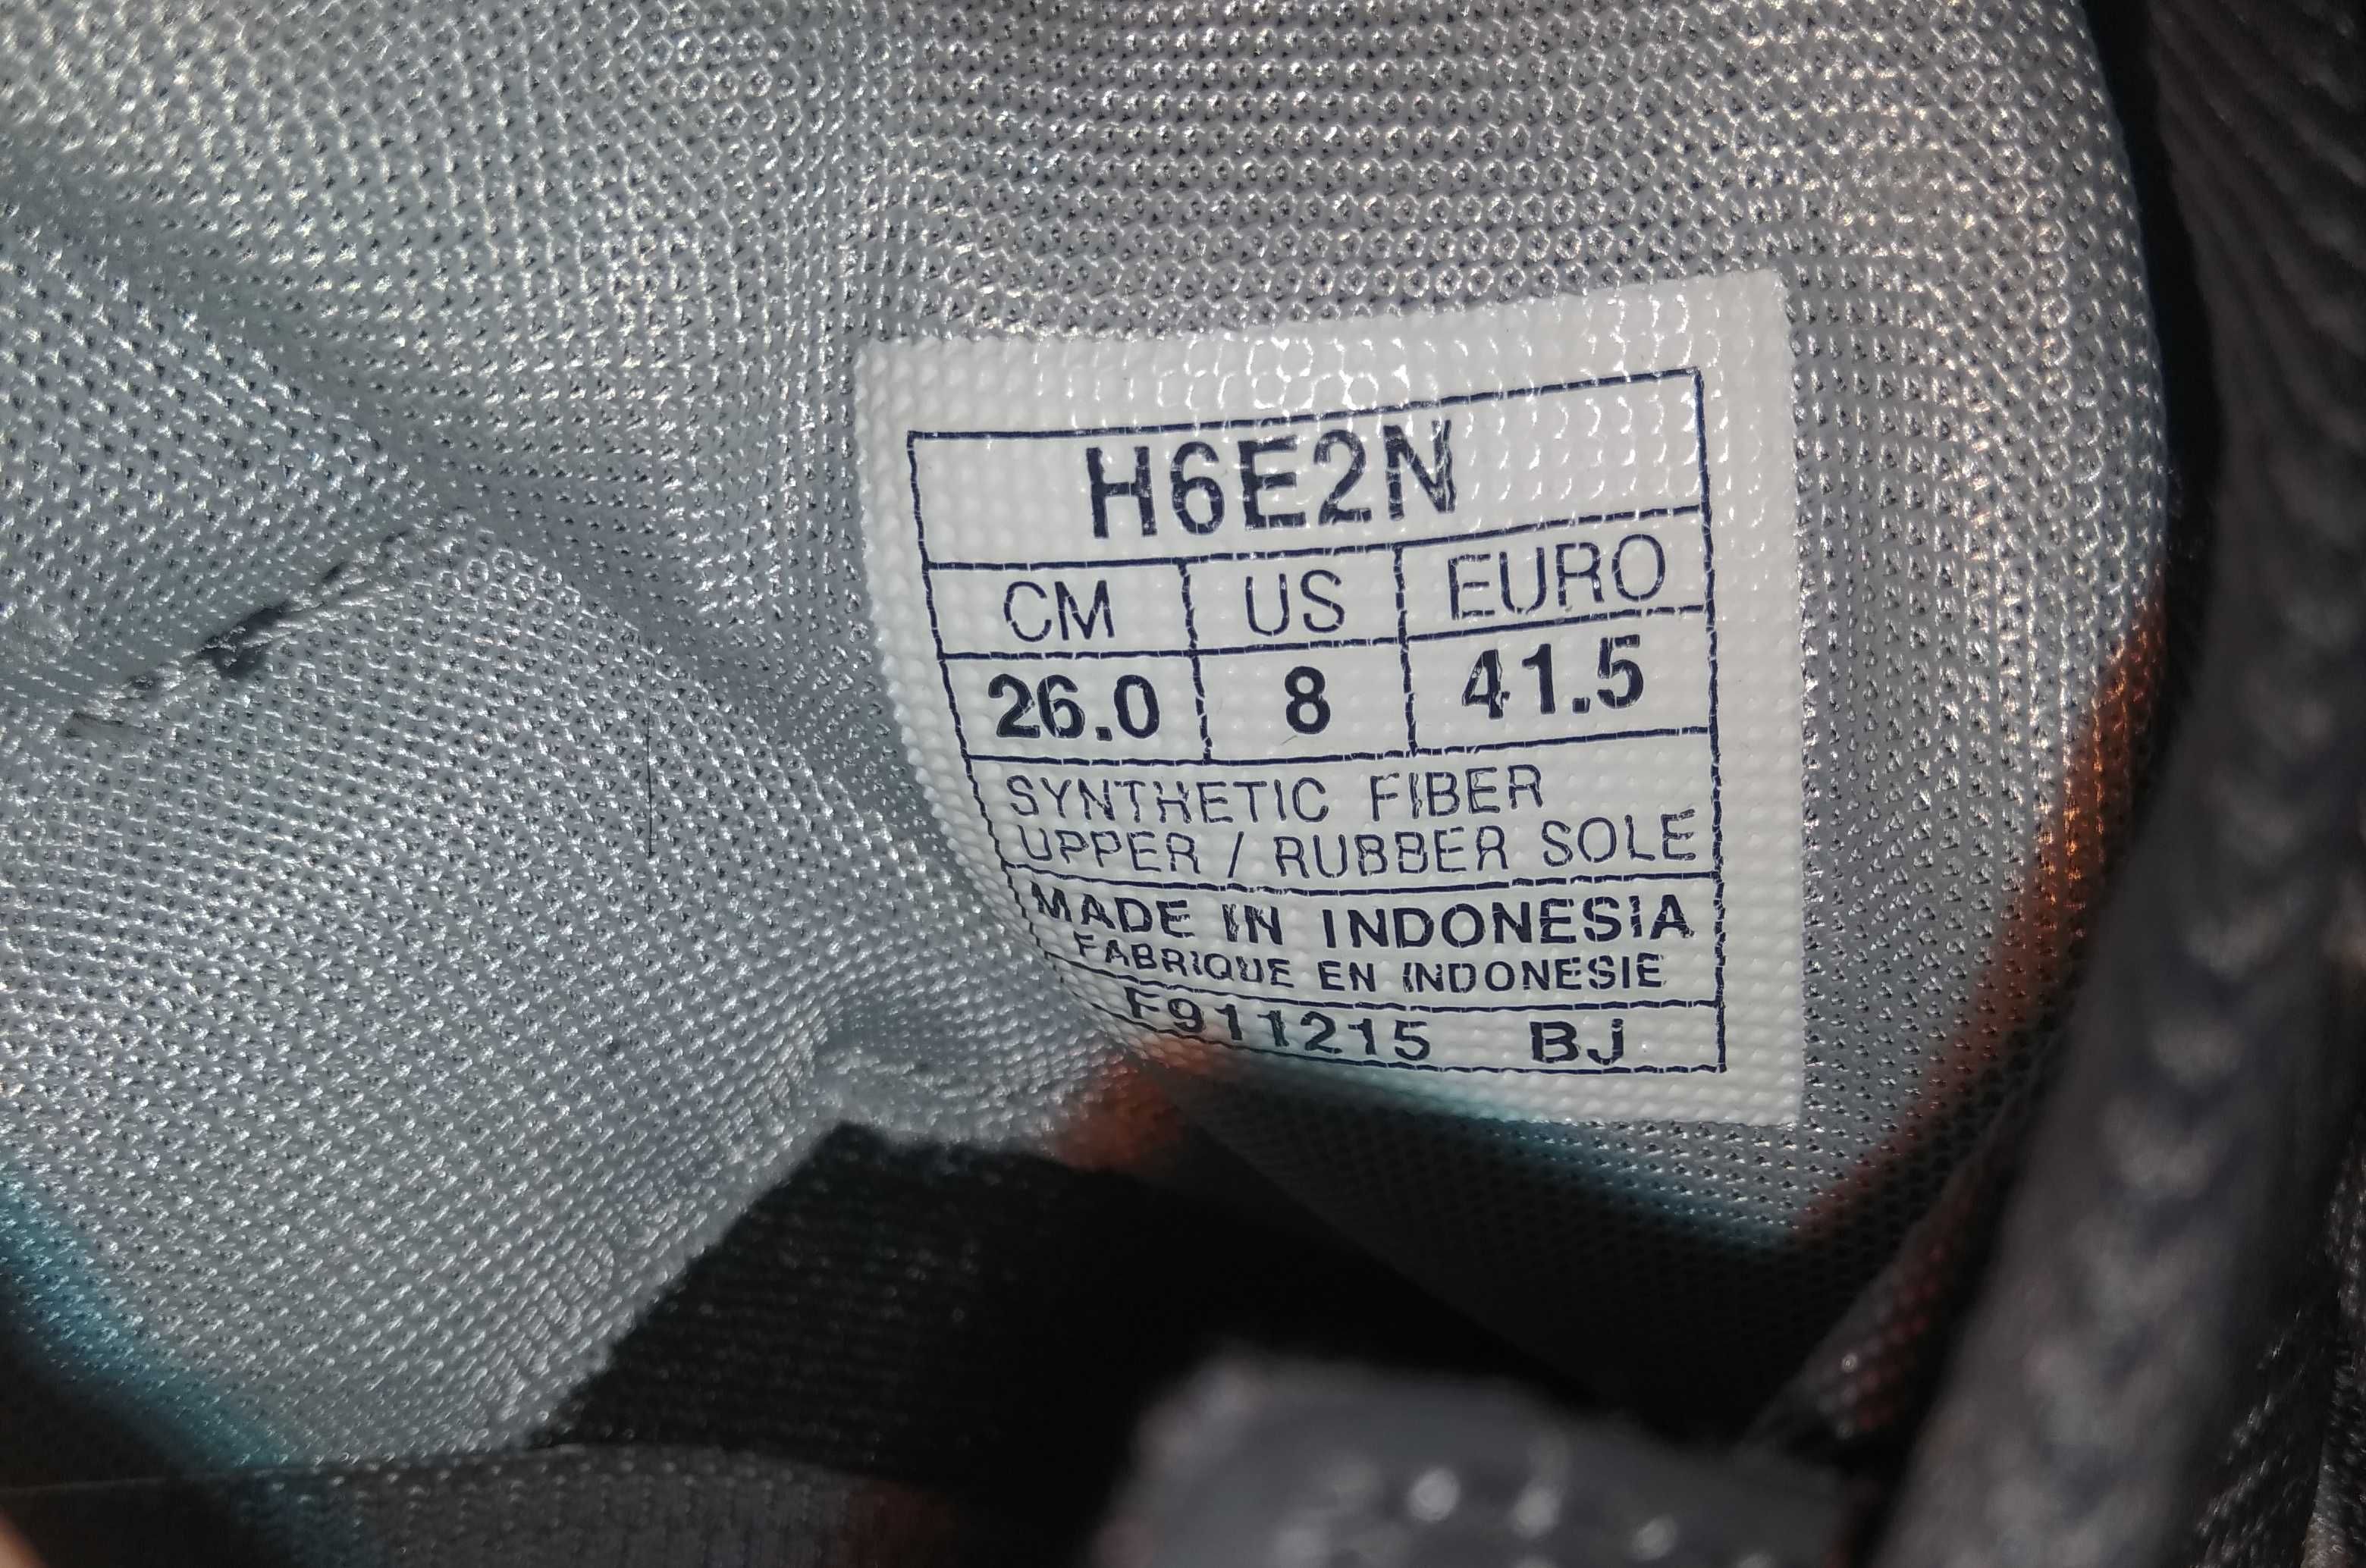 Продам новые кроссовки ASICS Gel - Lyte EVO H6E2N оригинал